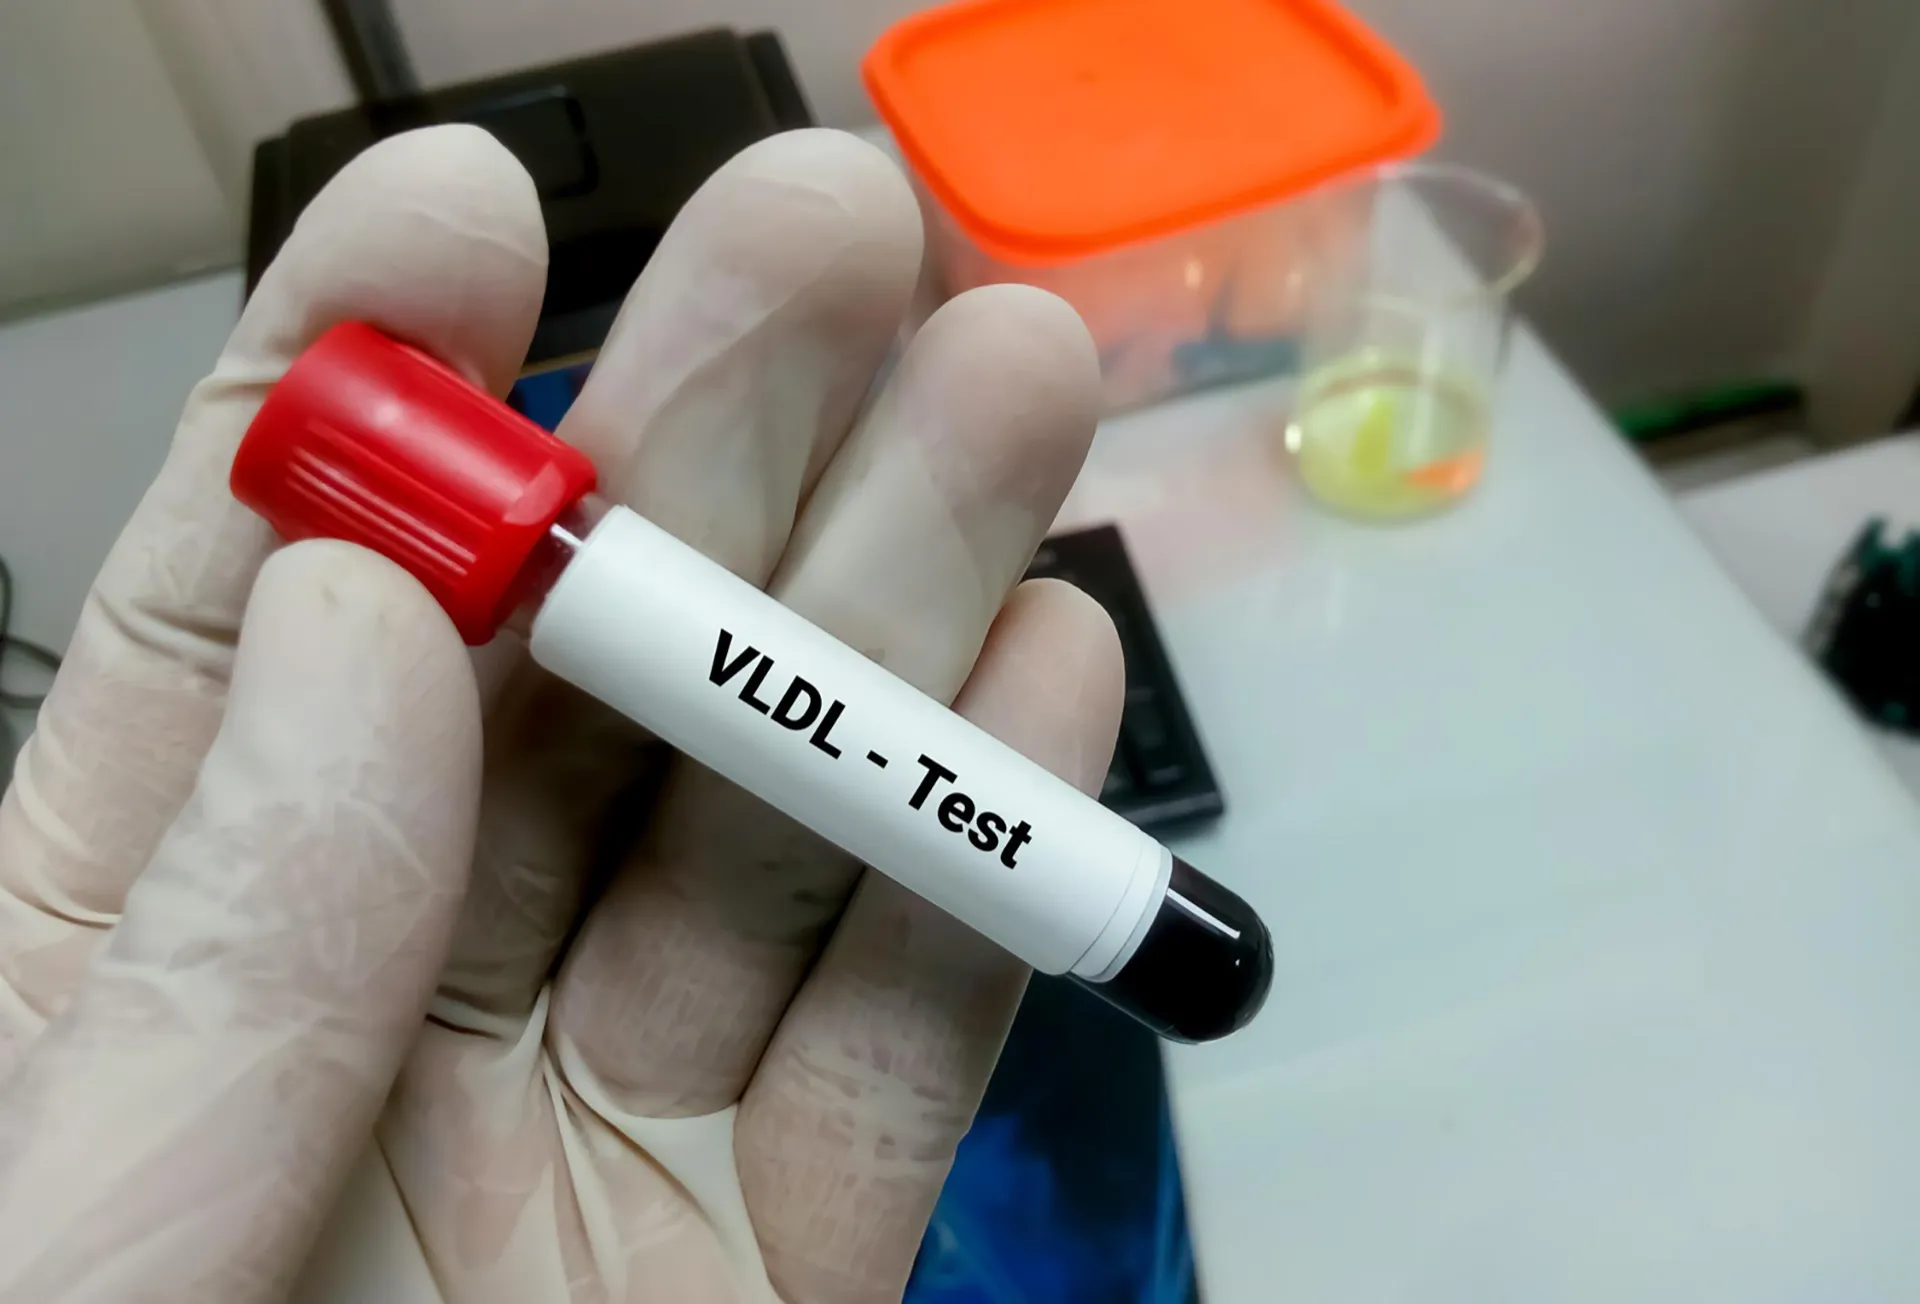 VLDL cholesterol blood test